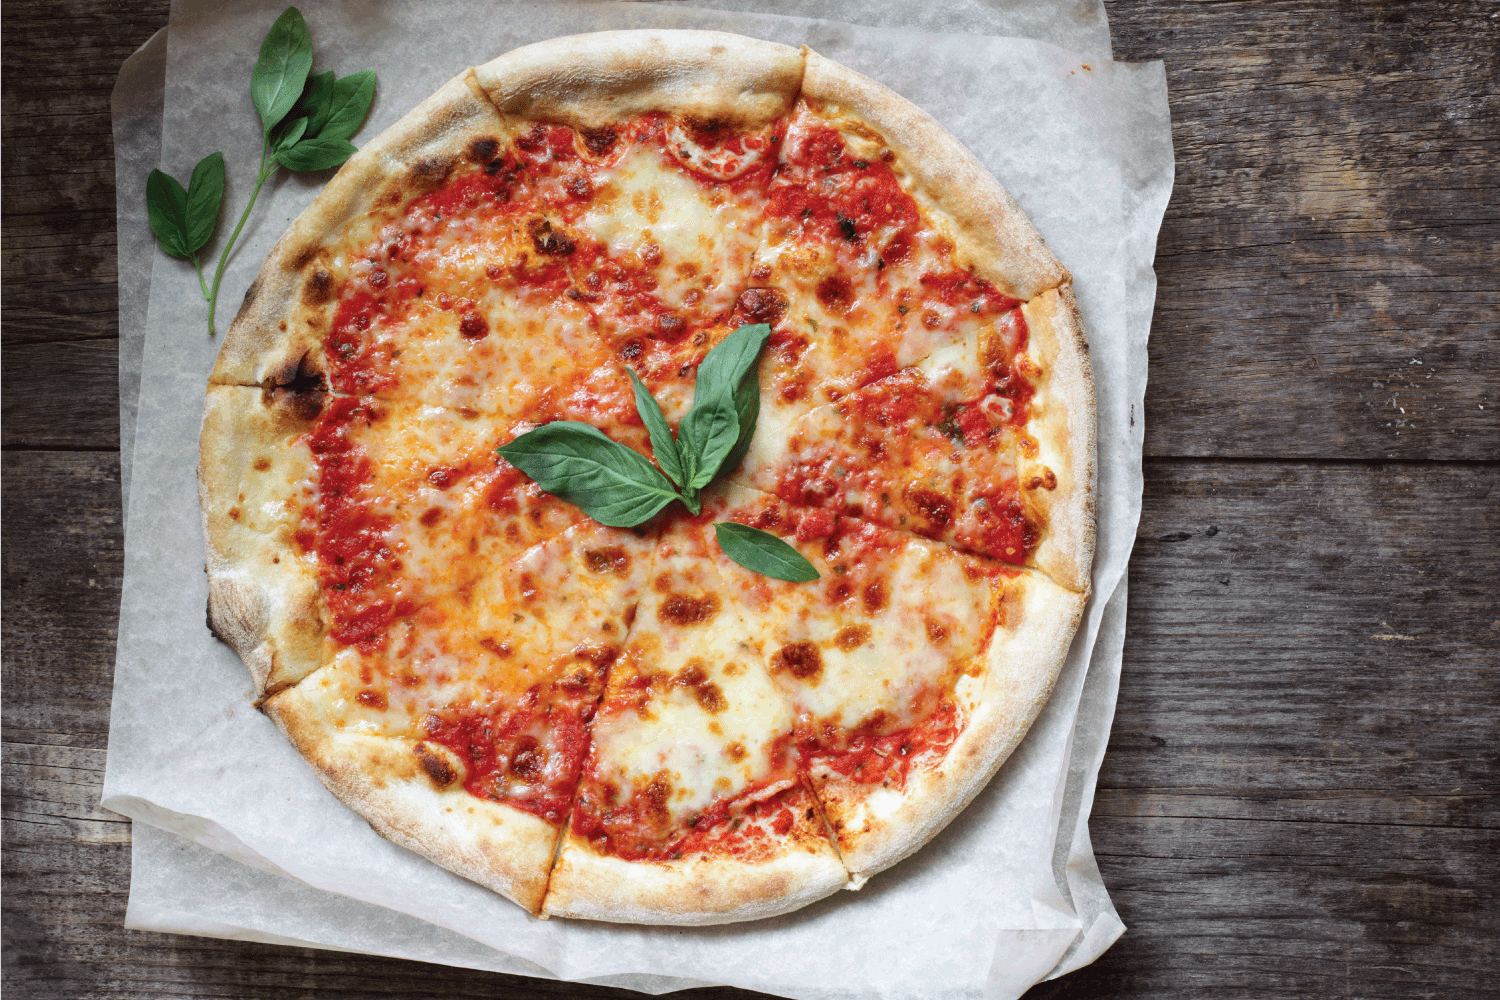 国产经典意大利玛格丽塔披萨配番茄酱、马苏里拉奶酪和罗勒。